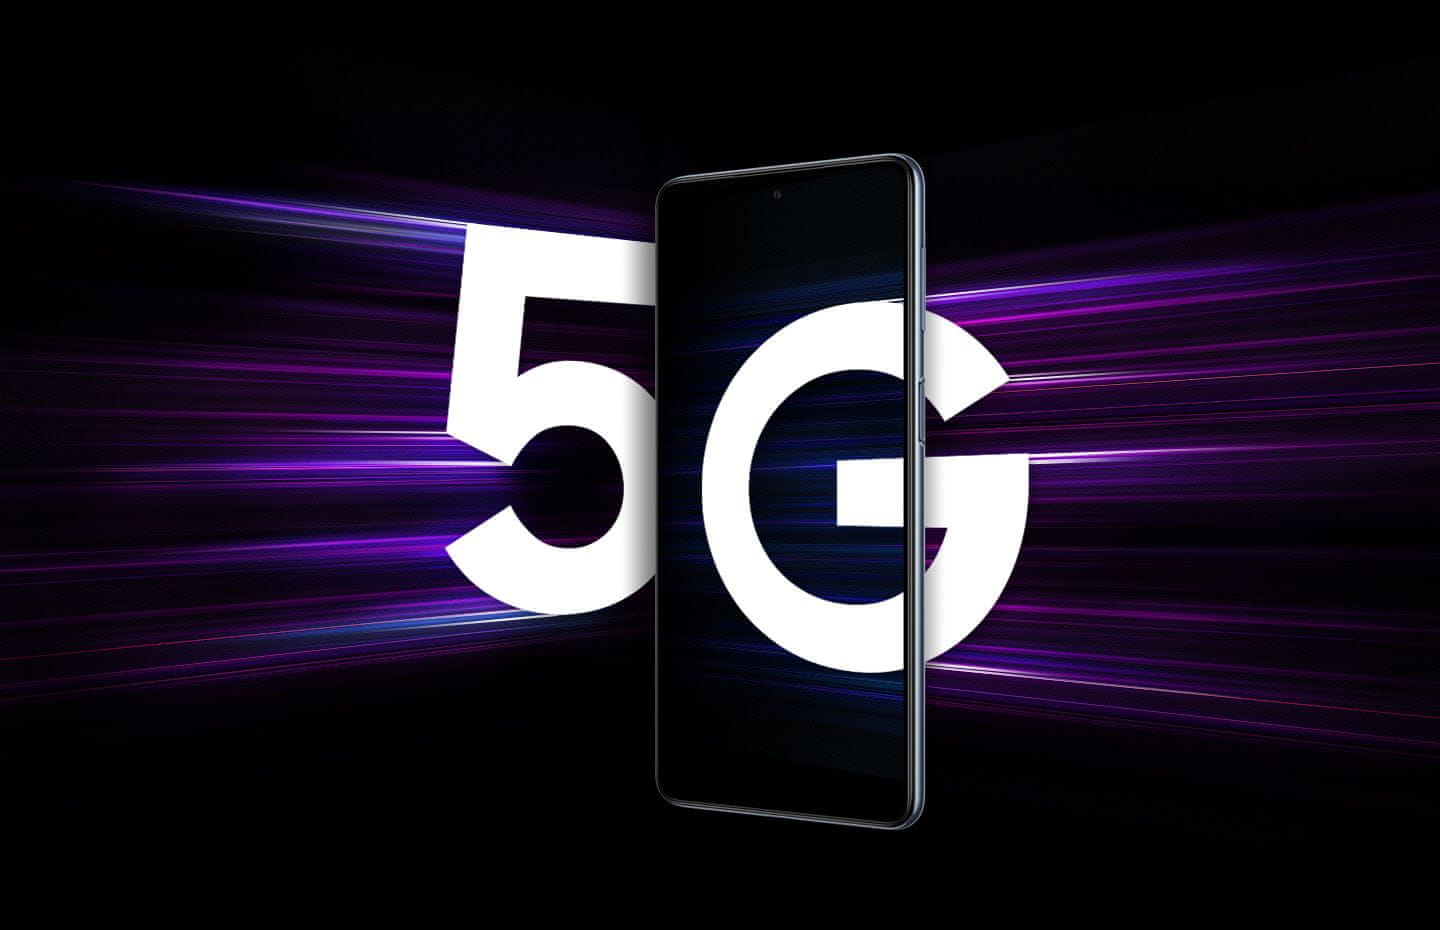 Samsung Galaxy M53 5G, telefón šikovný výkonný telefón smarphone FHD+ rozlíšenie 120 Hz obnovovacia frekvencia výkonný smartphone Qualcomm Snapdragon 5G pripojenie najrýchlejšie pripojenie najrýchlejšia sieť 5G dátové pripojenie bleskový internet